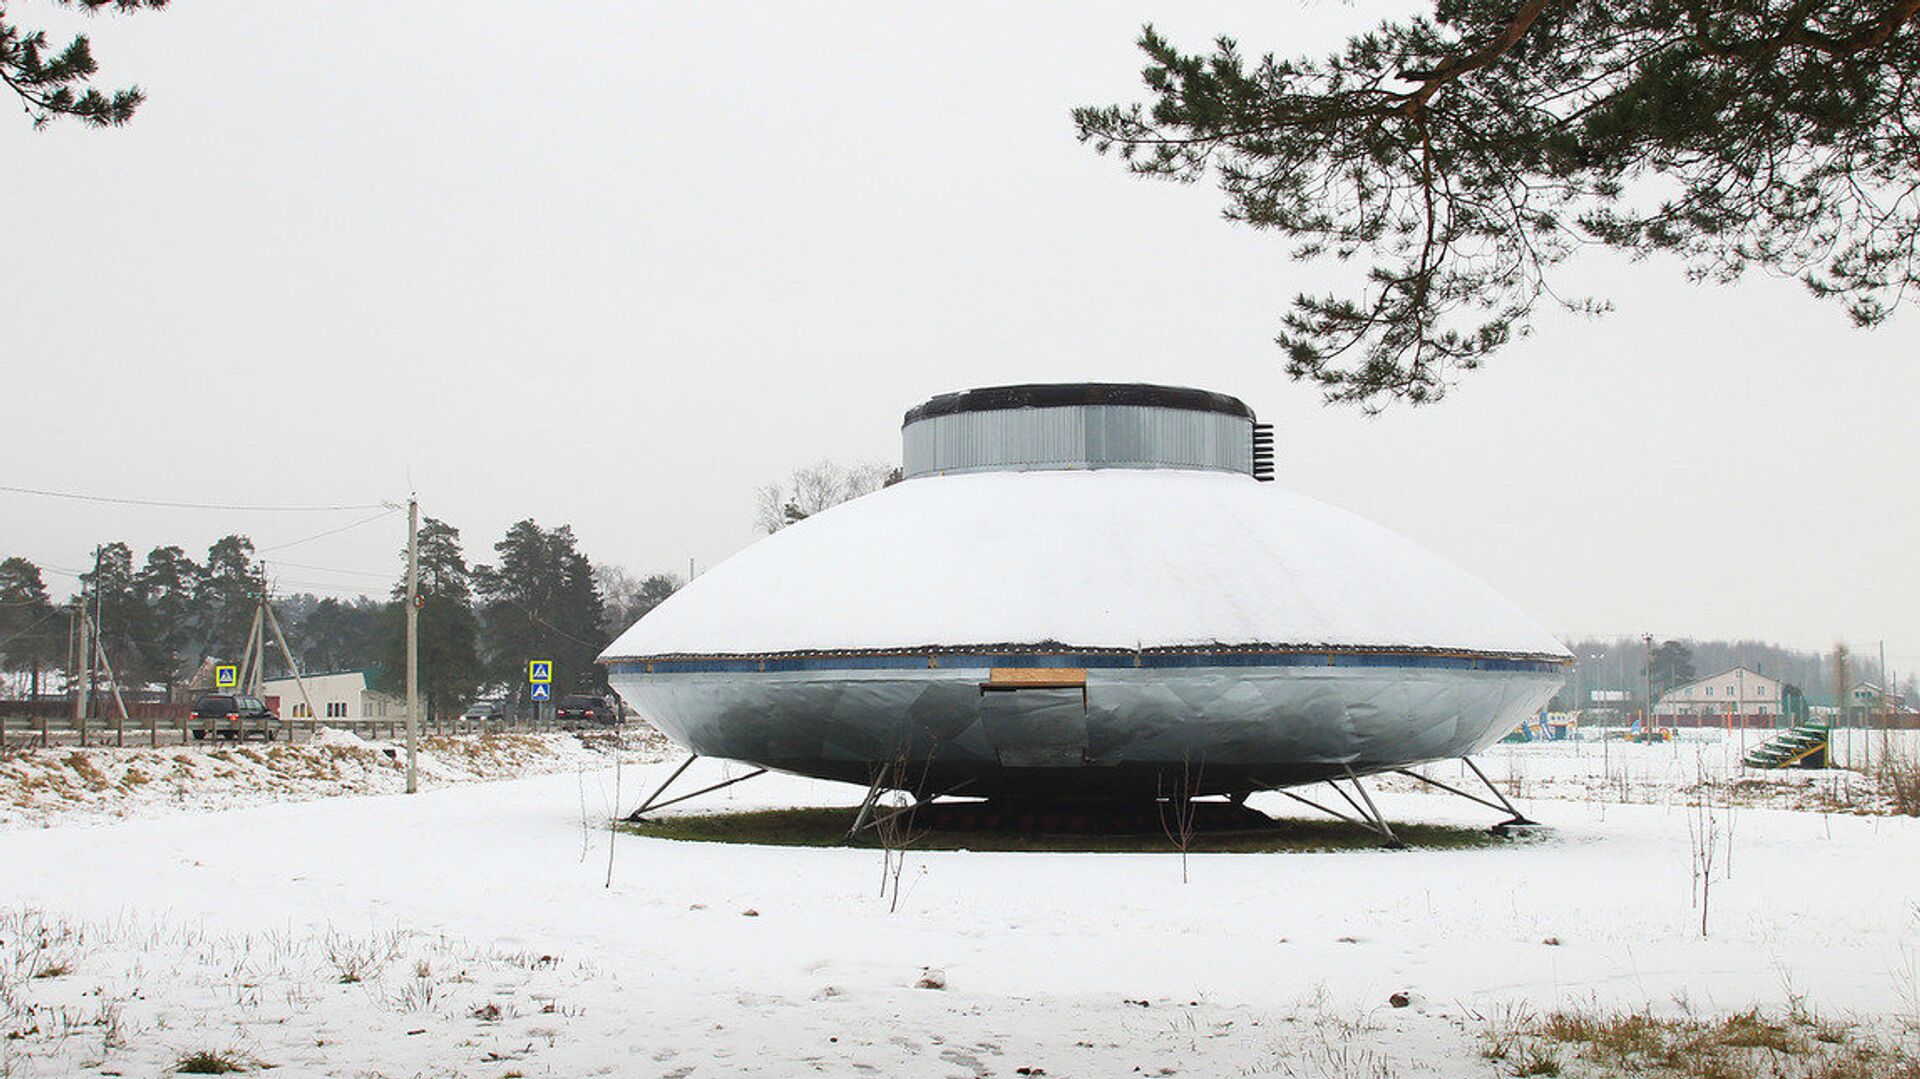 El platillo volante de Protasovo, un monumento para homenajear a los supuestos alienígenas que visitaron la localidad en la década de los 90  - Sputnik Mundo, 1920, 13.08.2021